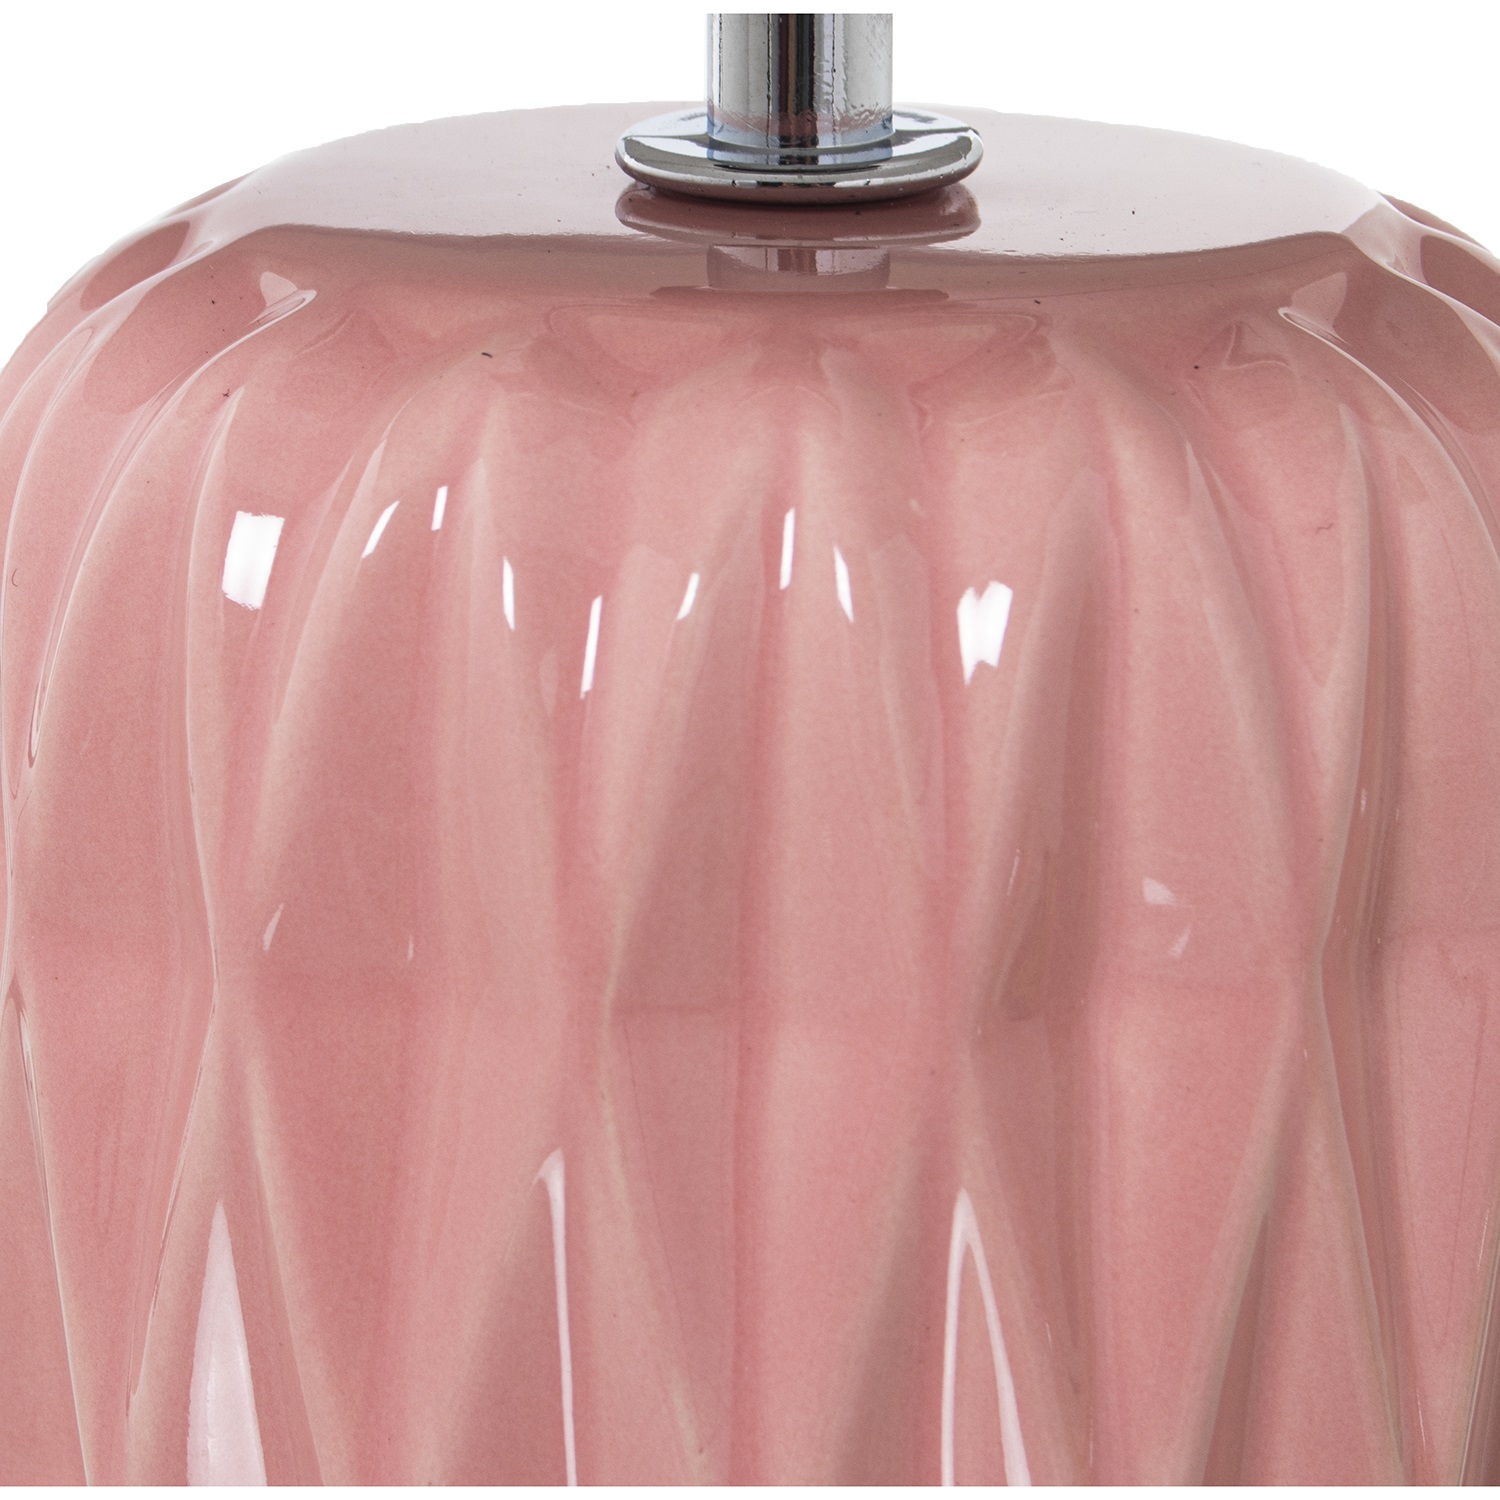 34060-lampara-ceramica-rosa-1.jpg